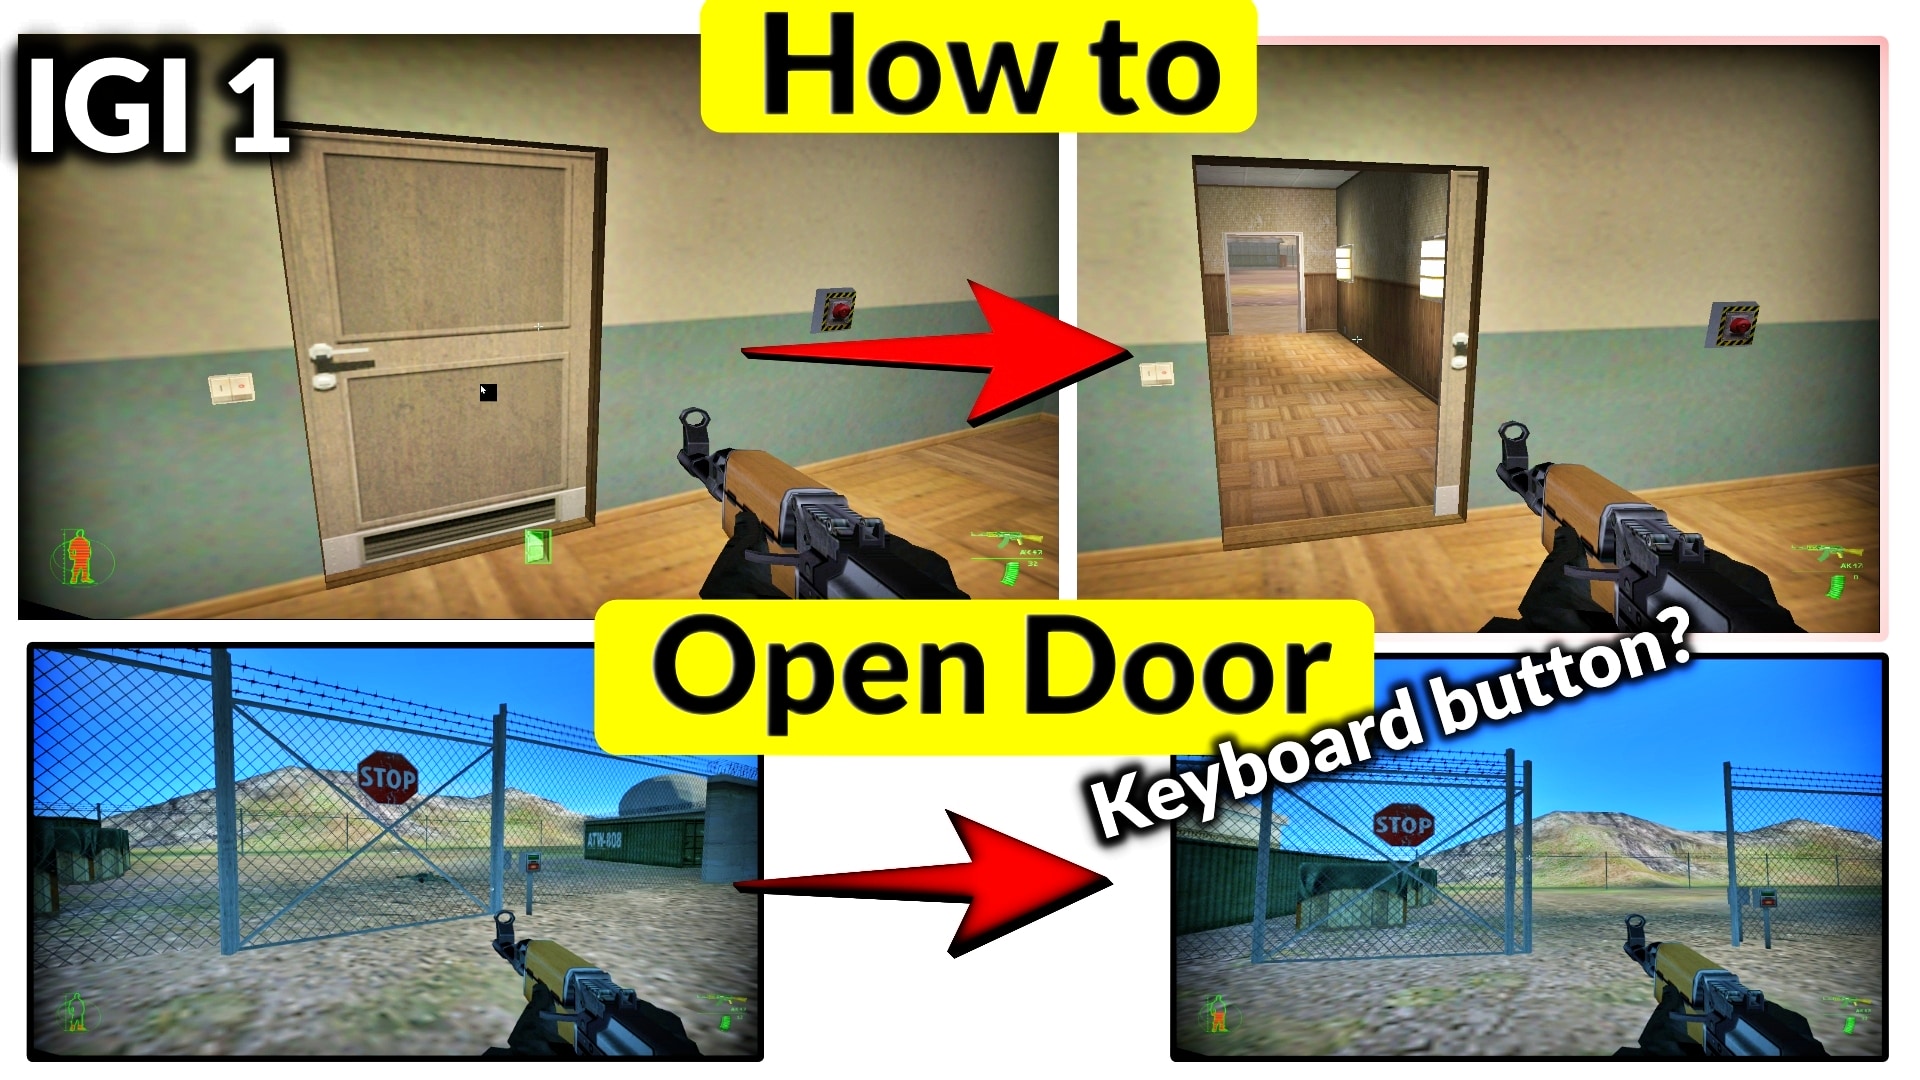 how to open door in IGI 1 PC Game